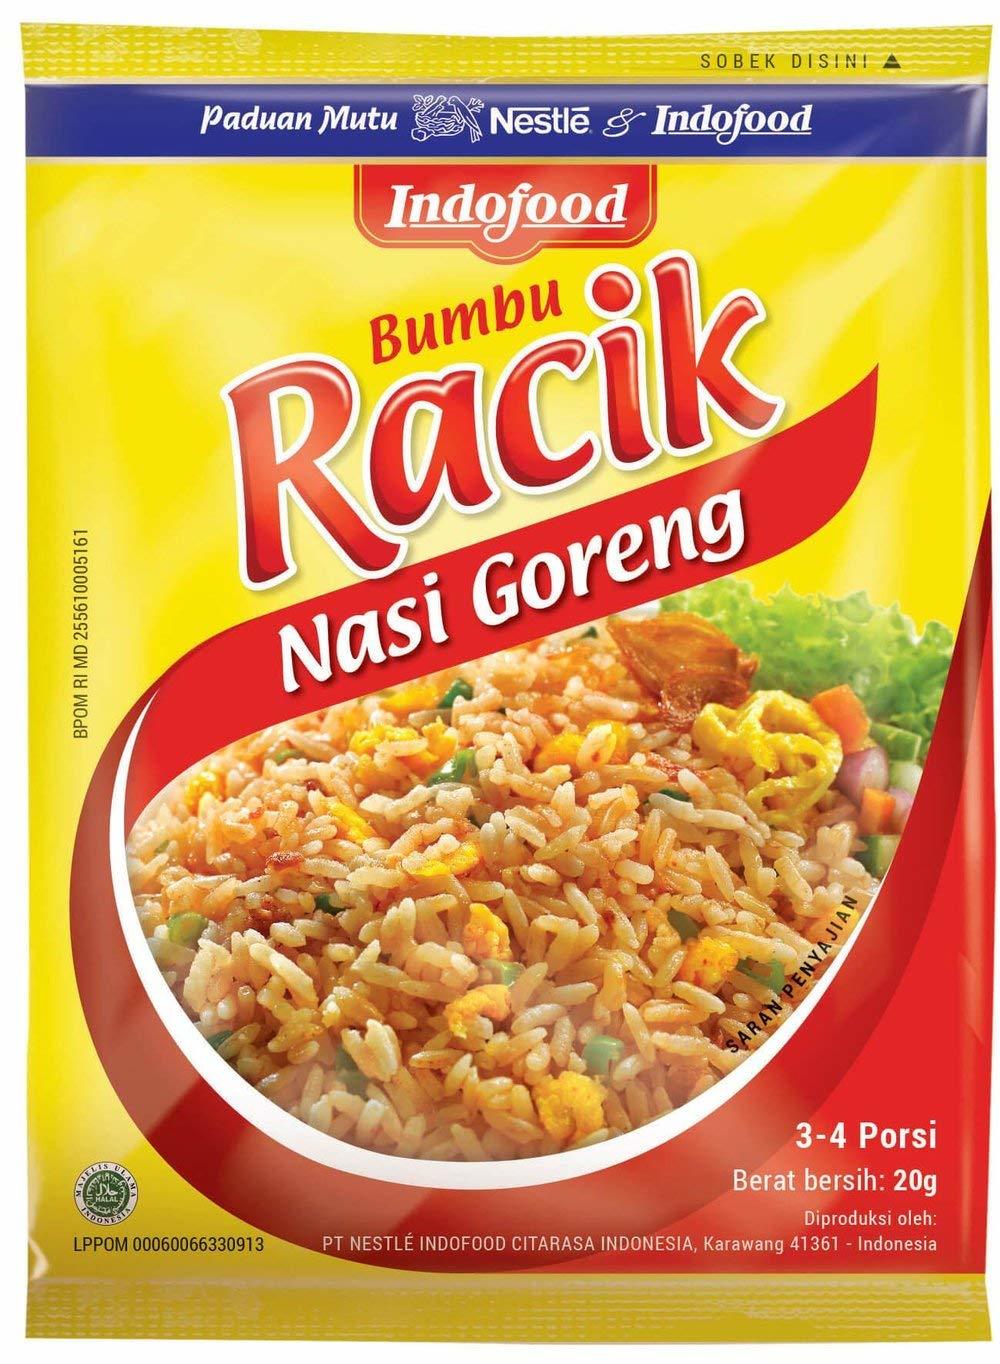 Nestle Indofood Racik Instant Seasoning Fried Rice (Nasi Goreng), 20 Pack @20g - $46.00